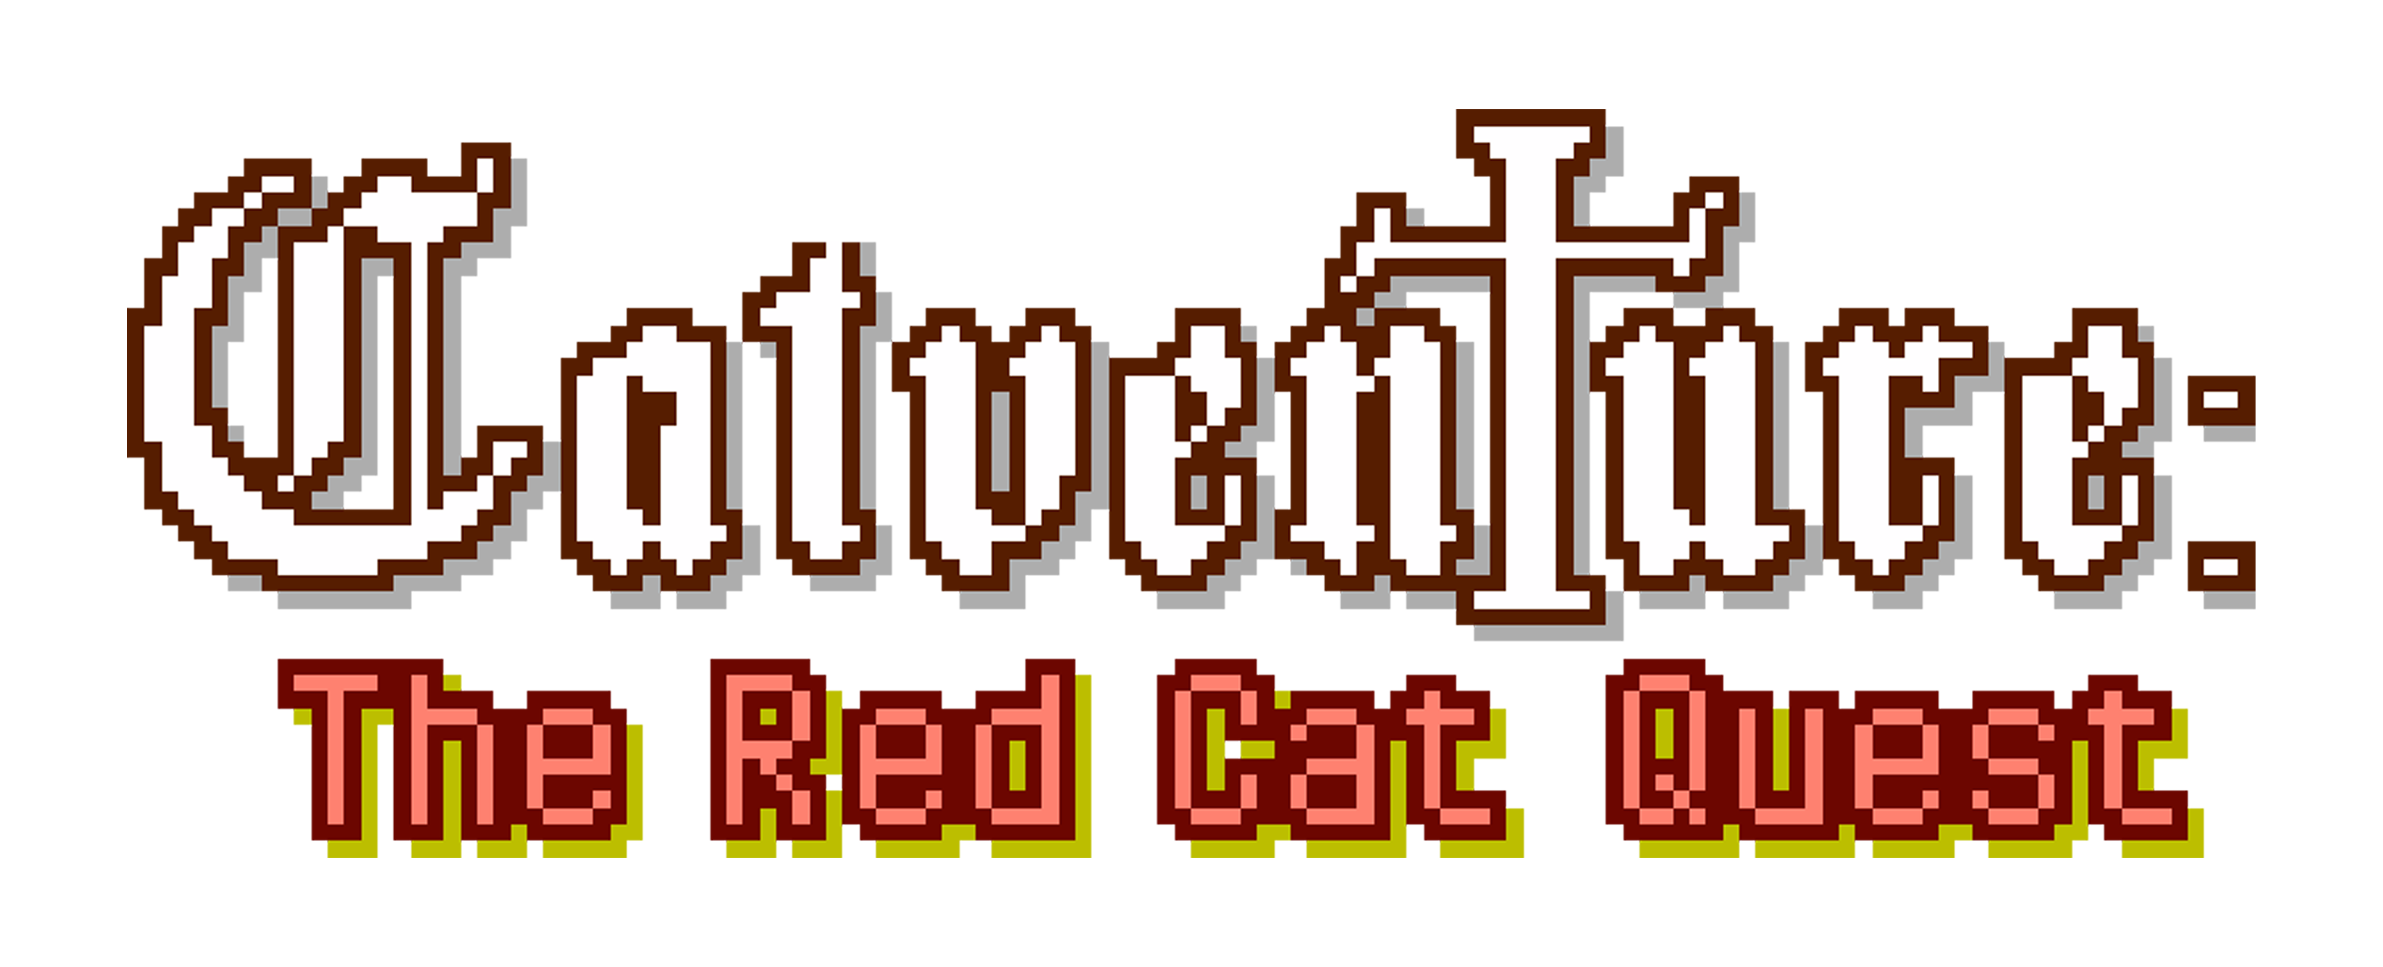 Catventure: The red cat quest